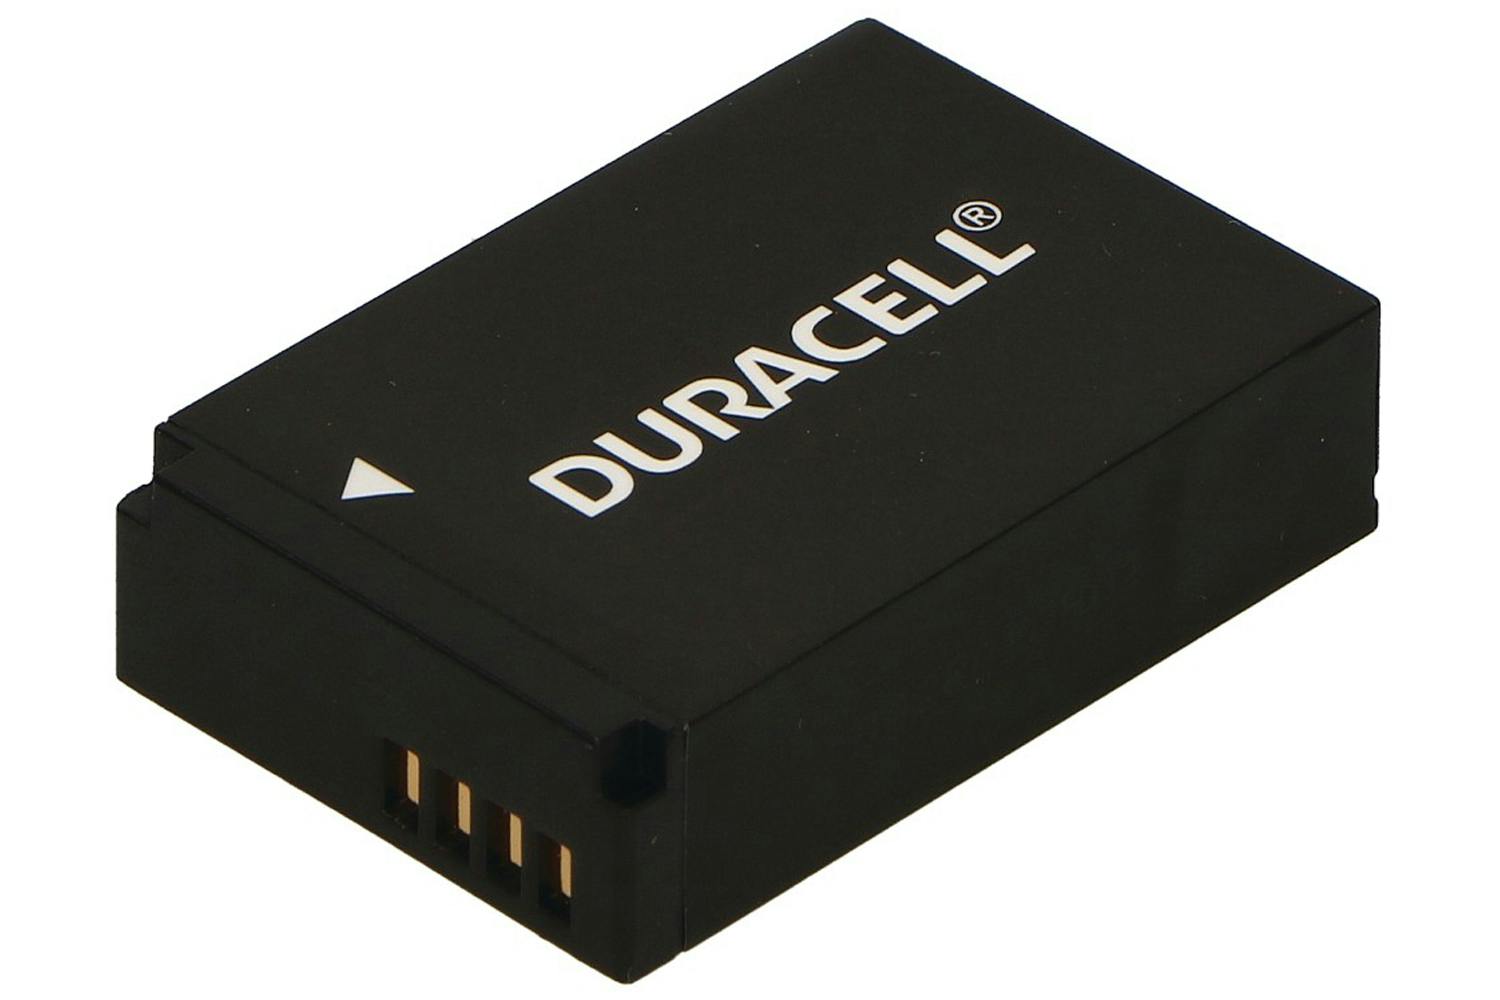 Duracell Digital Camera Battery 7.2V 750mAh